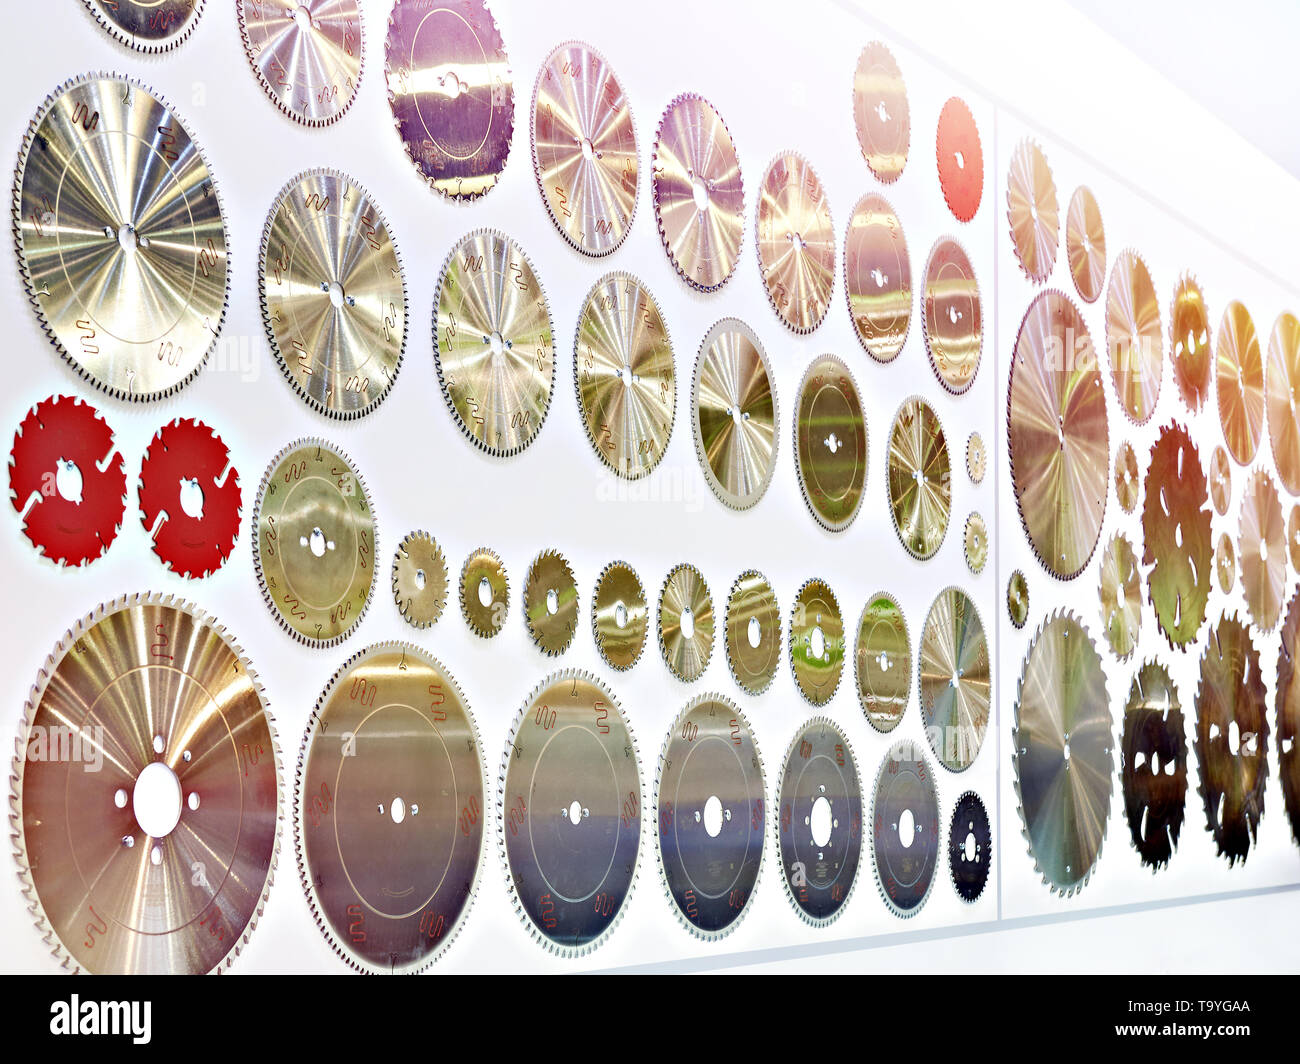 Sierras circulares para madera disco de blades de la máquina en la tienda Foto de stock